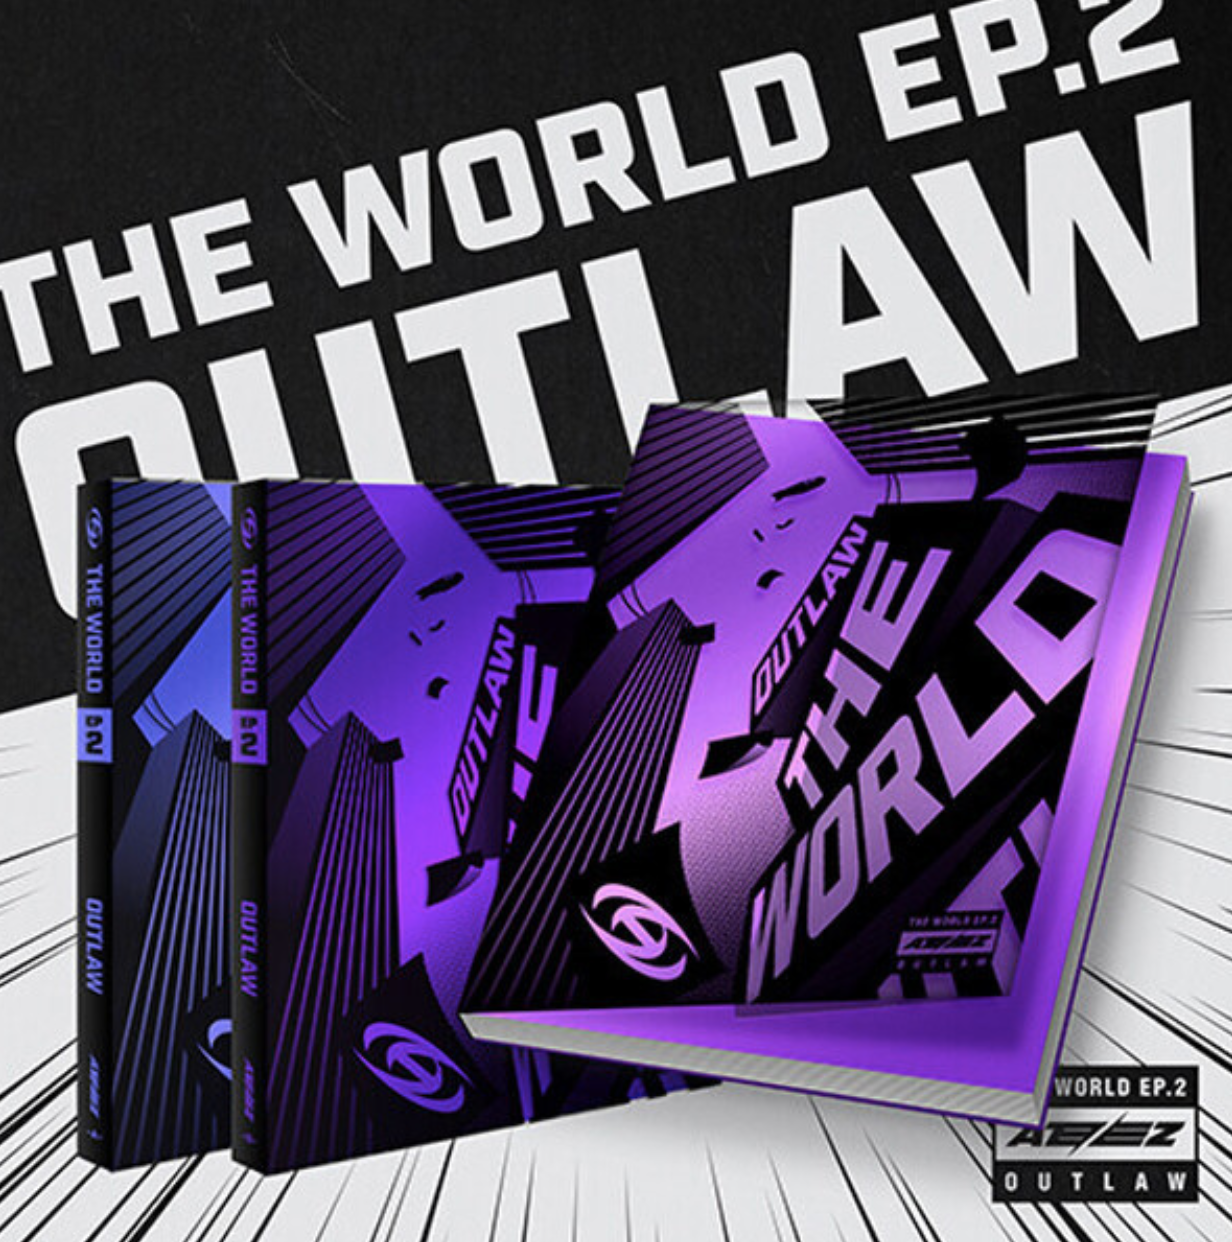 ATEEZ 9th Mini Album "The World EP.2: Outlaw"